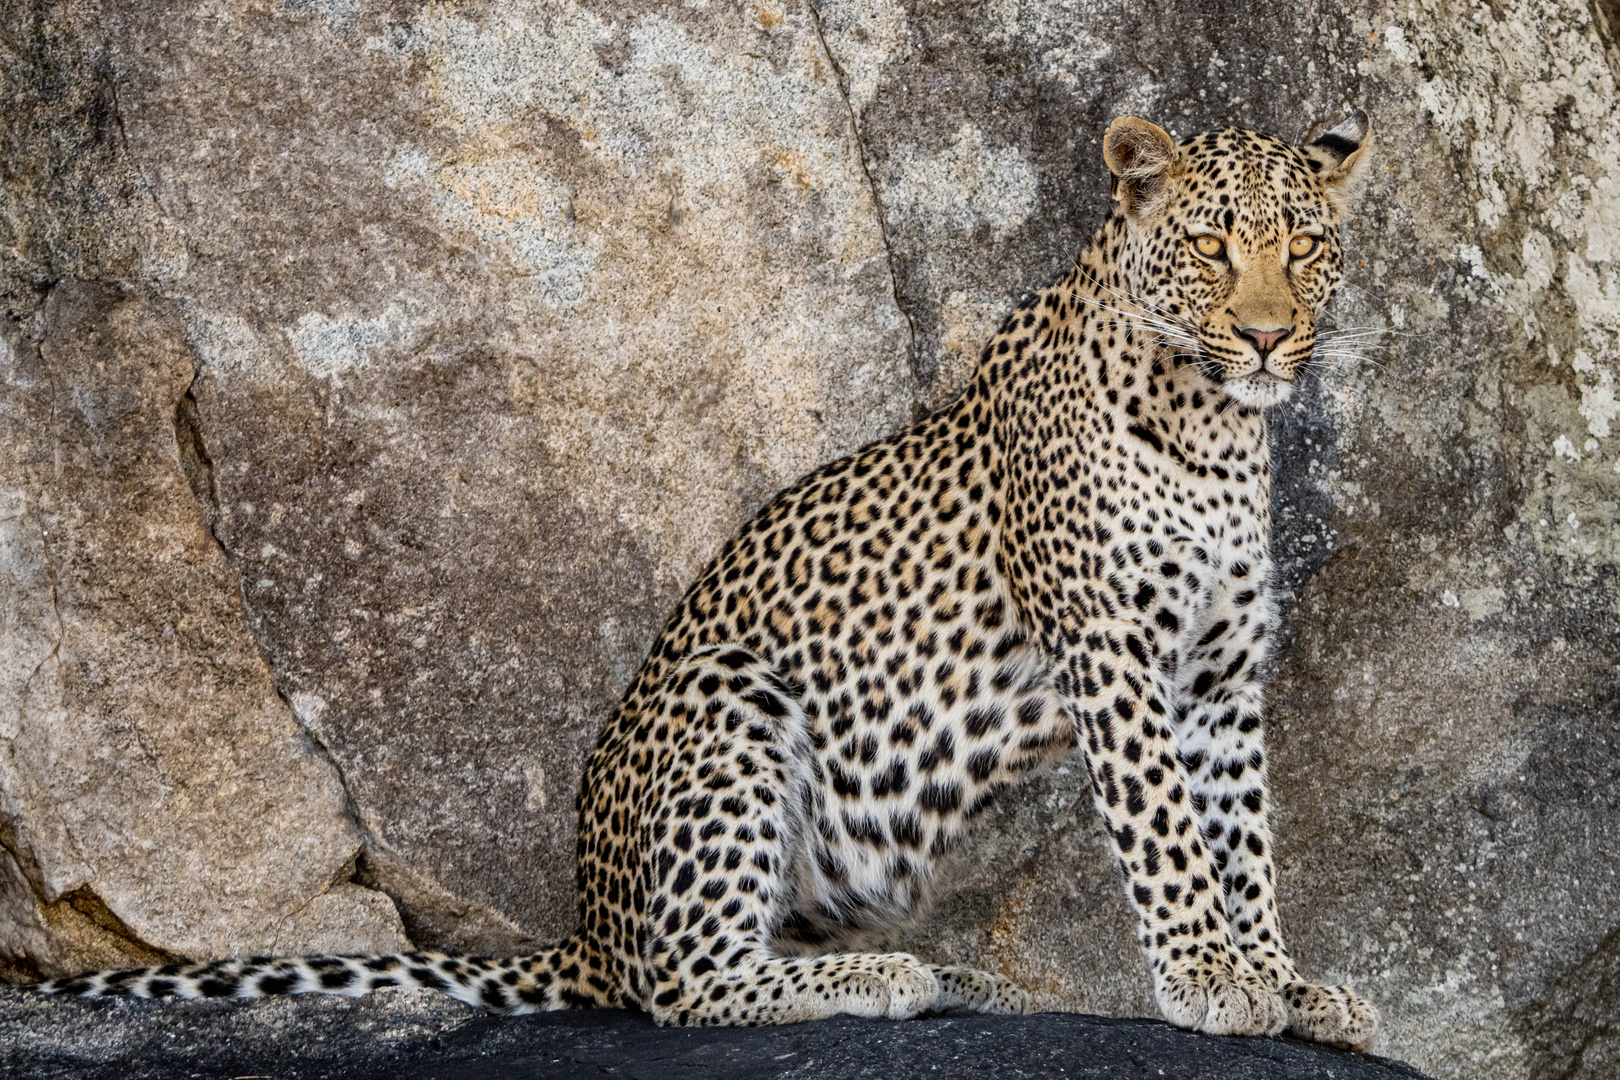 Leopard in the Rocks